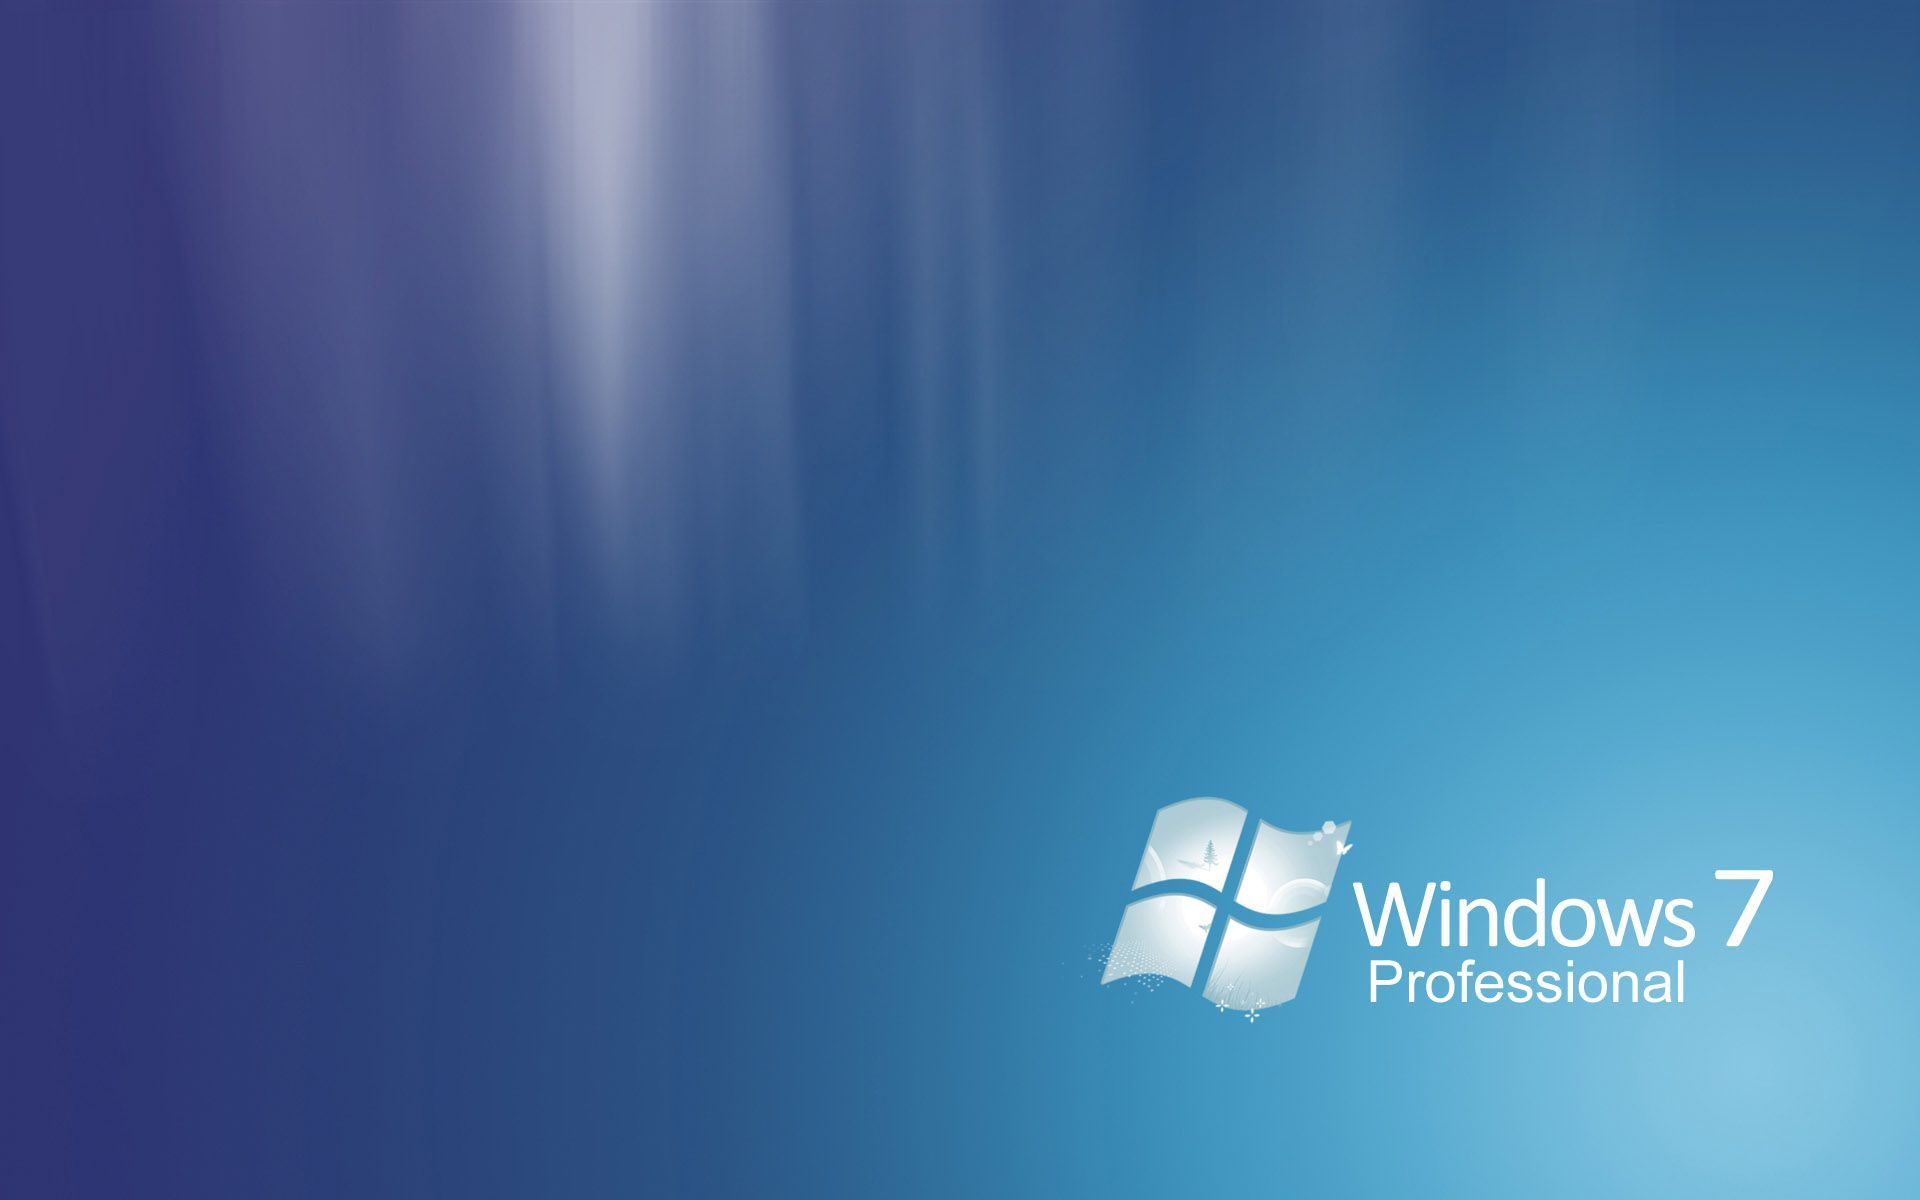 Những hình nền máy tính Desktop cho Windows 7 Professional đẹp mắt, tạo cảm giác mới mẻ và phong phú cho người dùng. Hãy thưởng thức những thiết kế tuyệt đẹp này để làm cho máy tính của bạn thêm sáng tạo và đẹp mắt hơn.